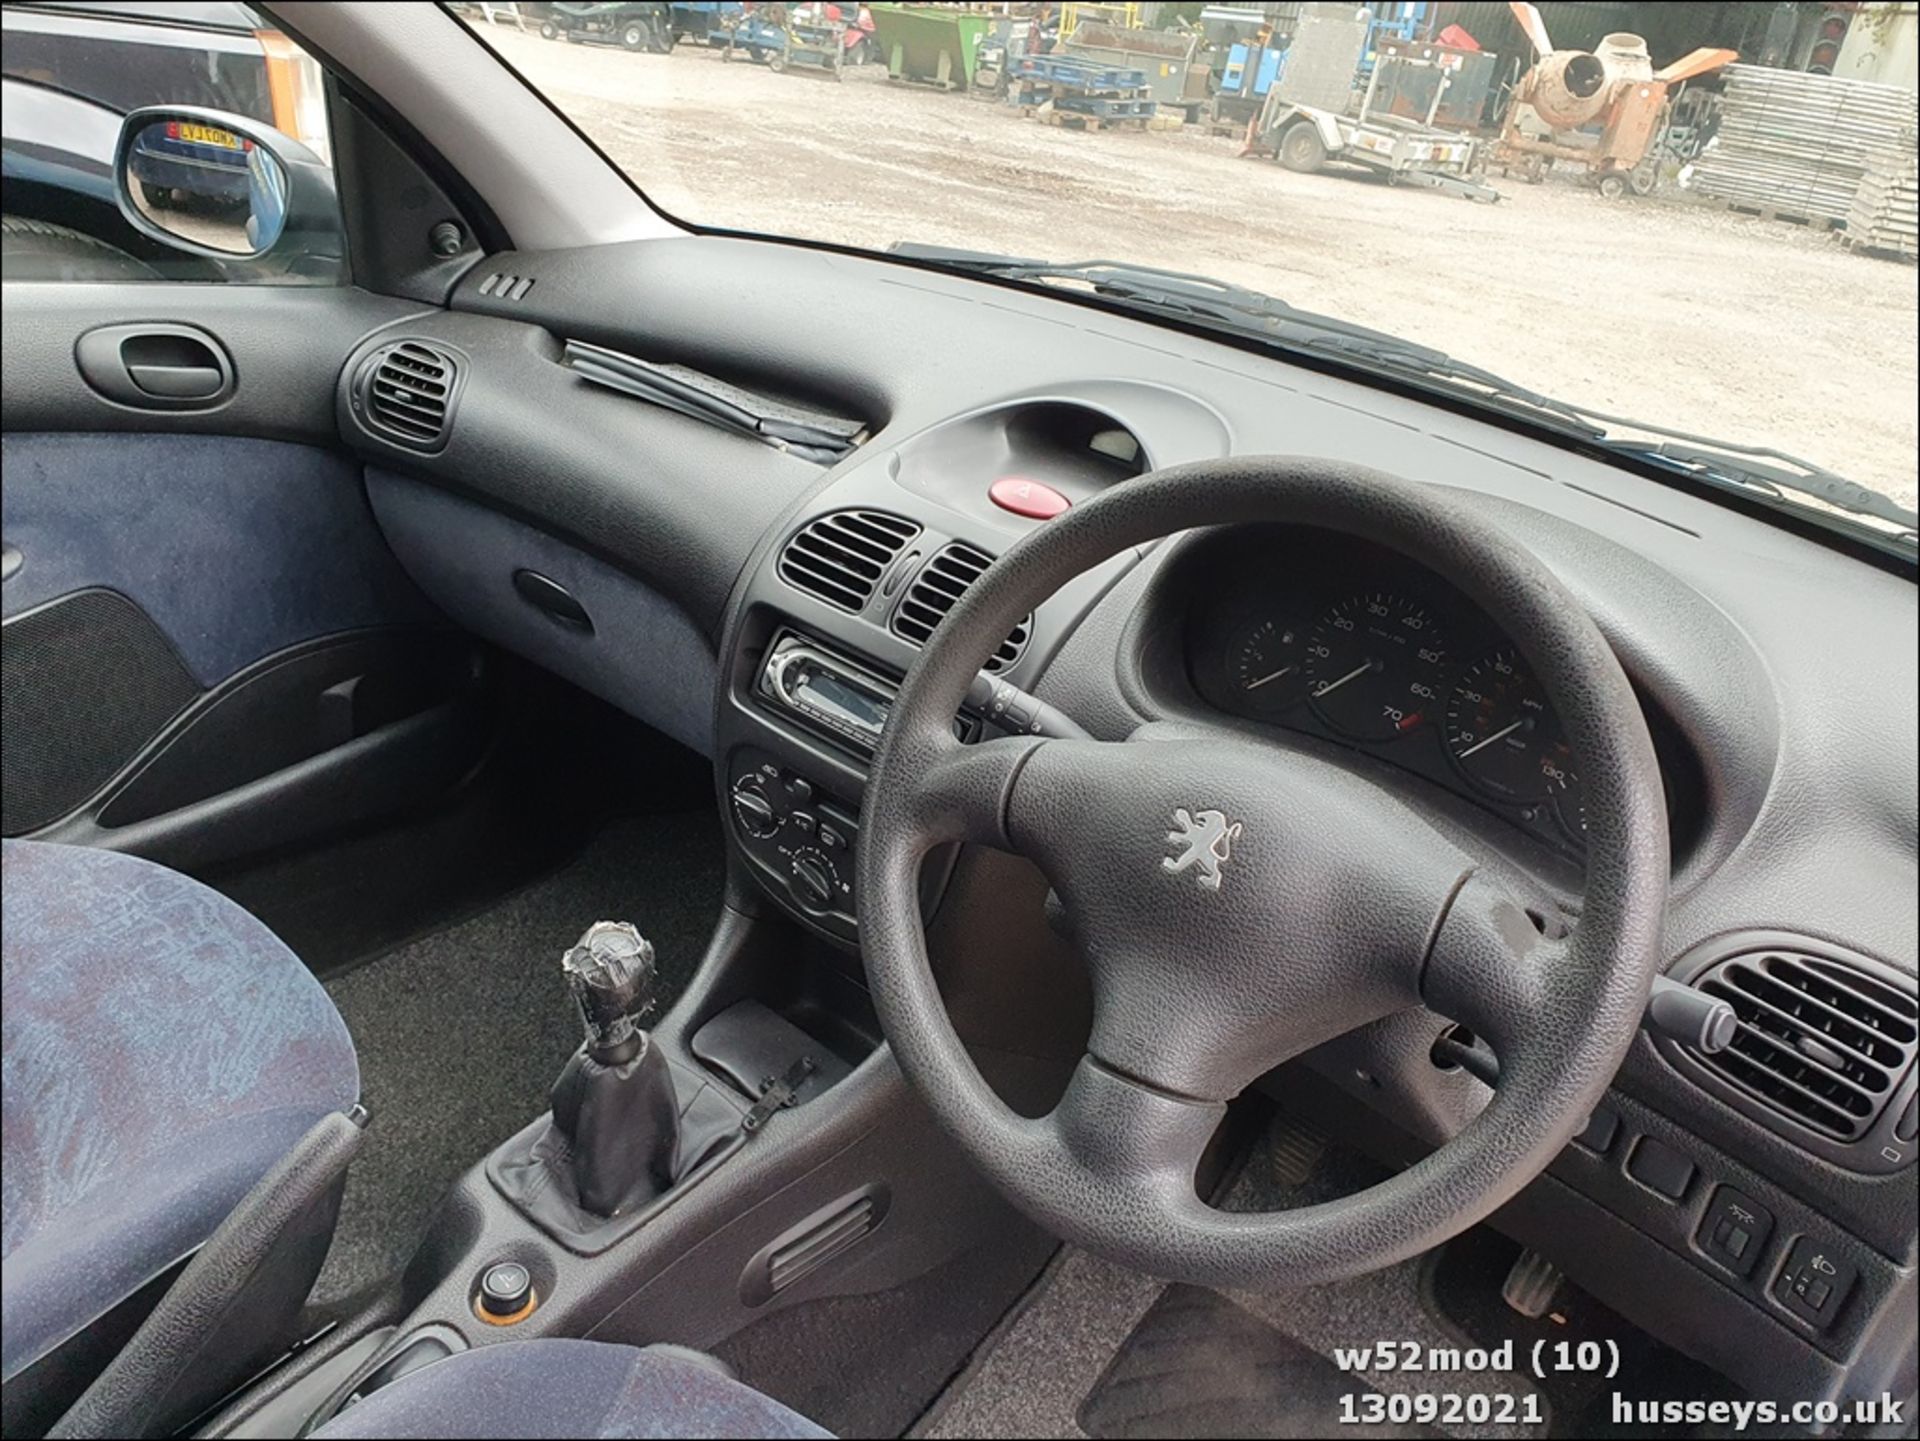 2000 PEUGEOT 206 LX - 1360cc 5dr Hatchback (Blue, 115k) - Image 10 of 13